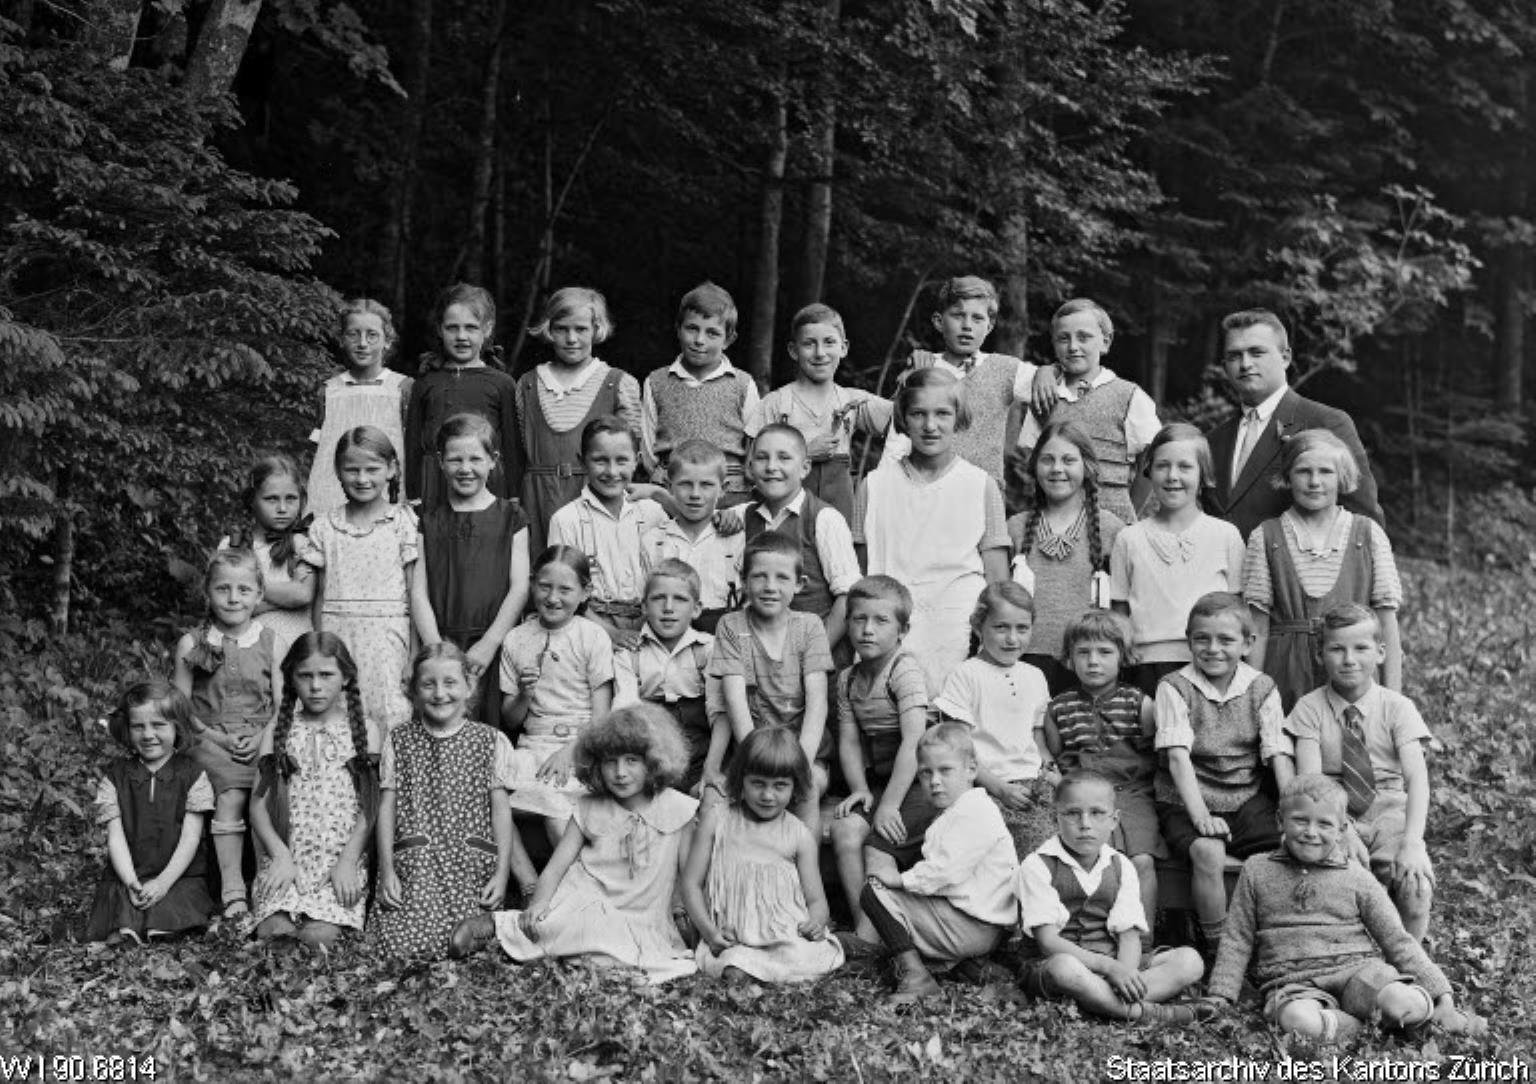 Primarschule Tanne, Schafroth, 1934